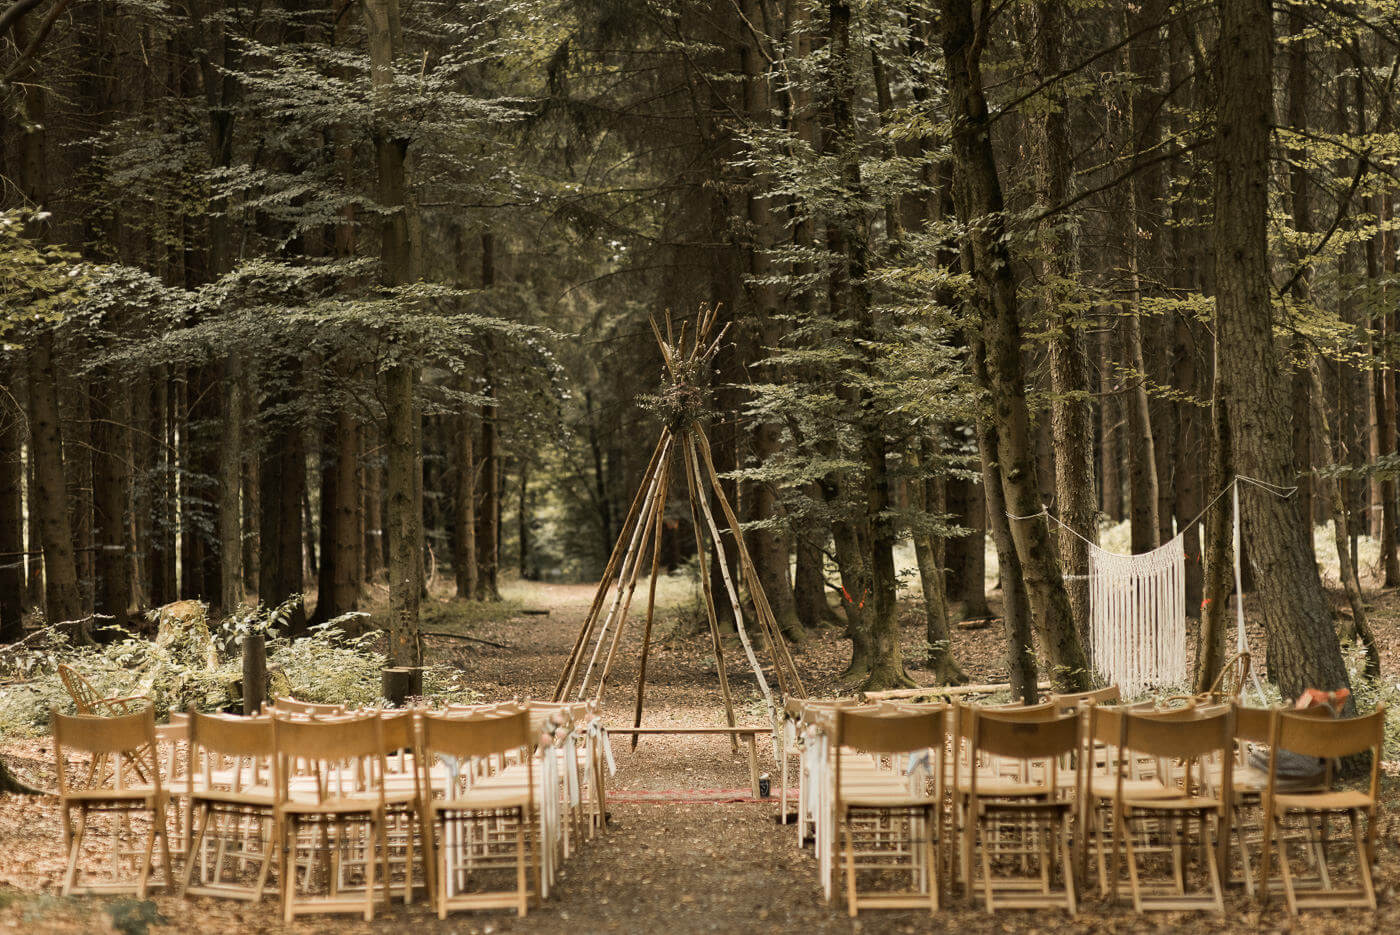 Trauung Location in Wald Hochzeit mit Tipi und Holz Klappstuehlen in der Natur